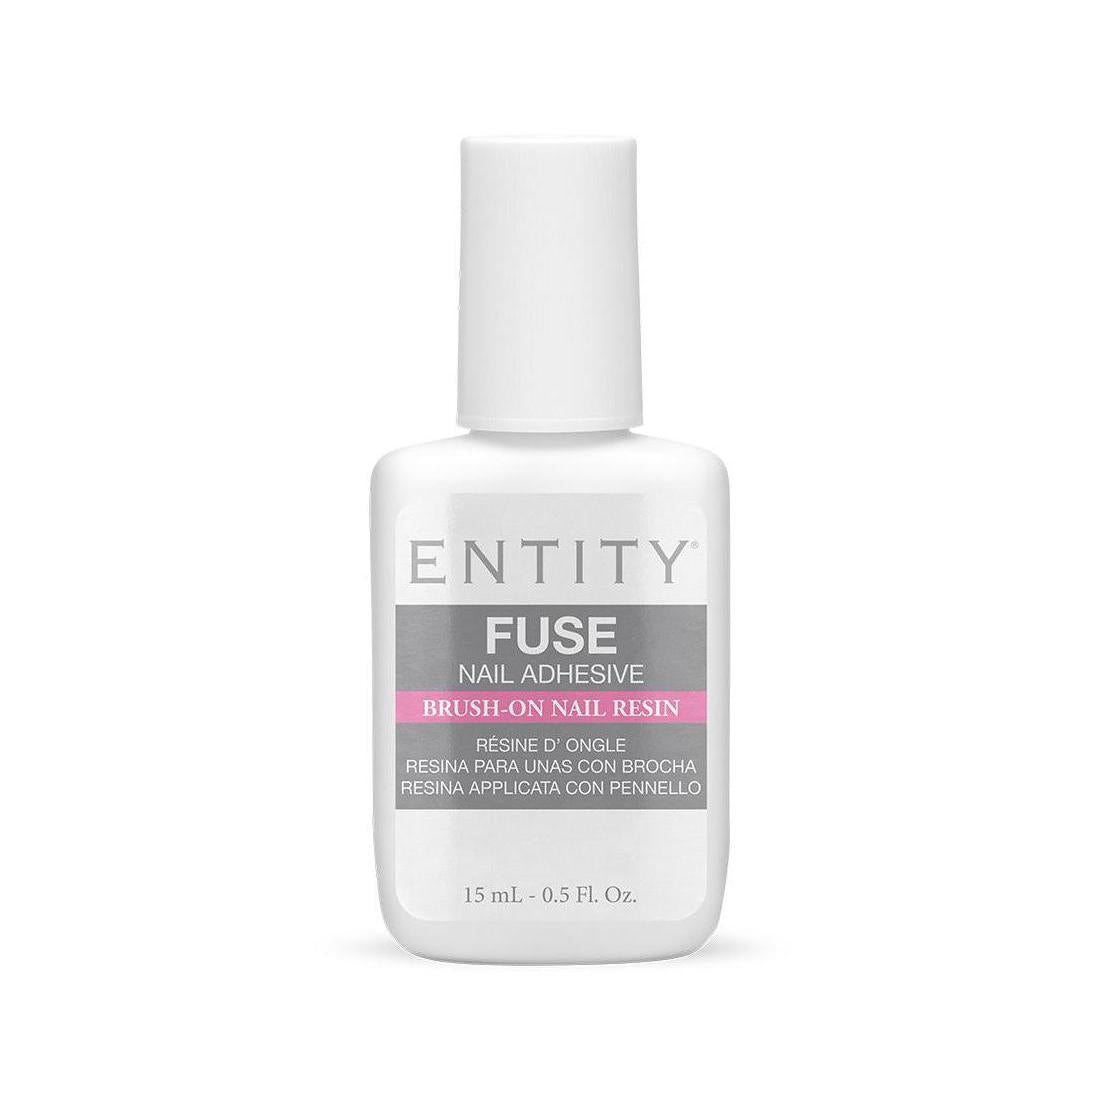 Entity Fuse Nail Adhesive 15 ml/0.5 fl oz